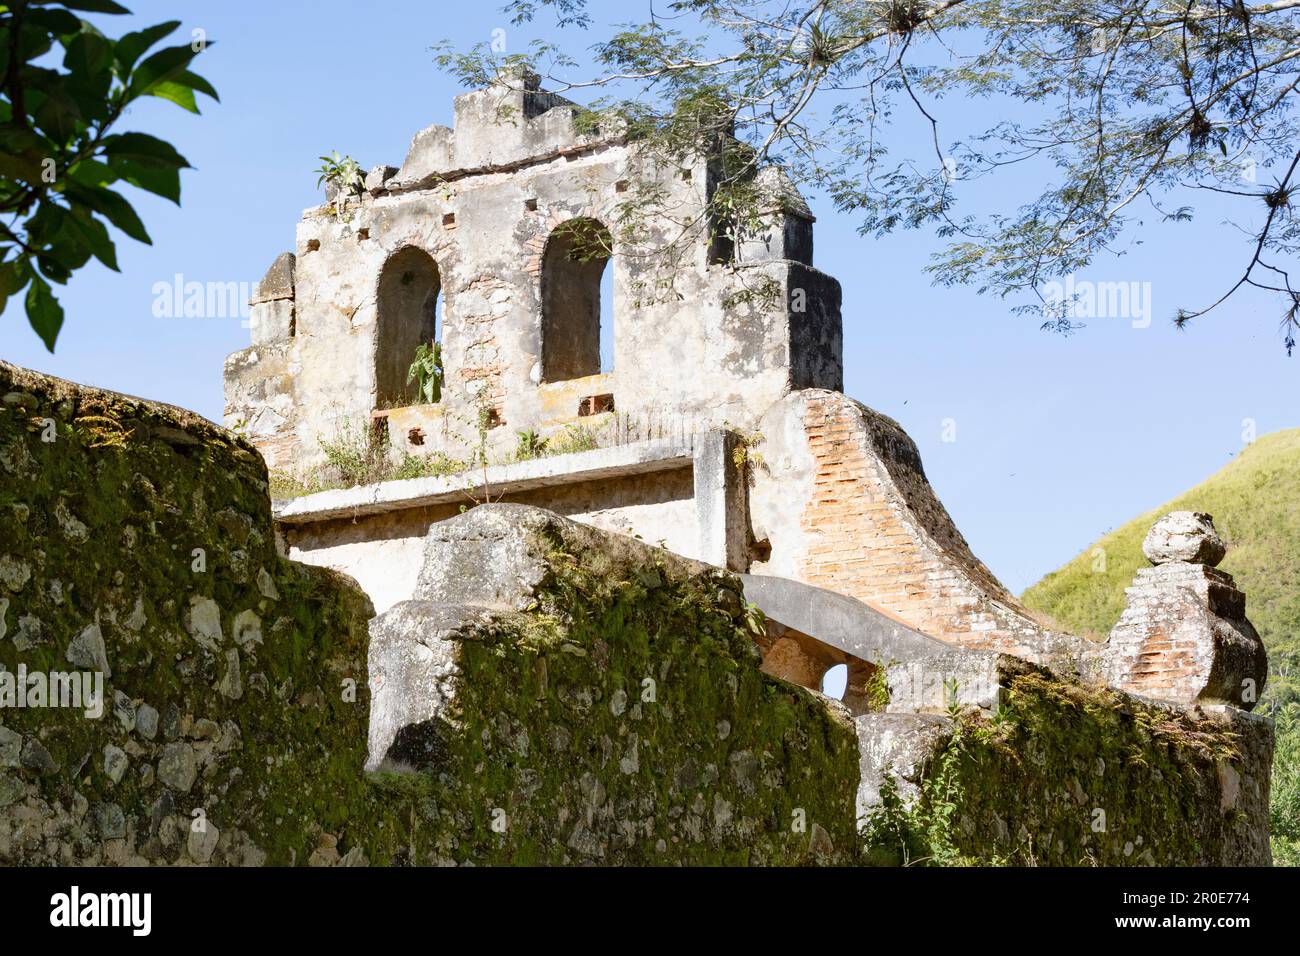 The ruins at Ujarras, Valle de Orosi, Costa Rica, Central America Stock Photo